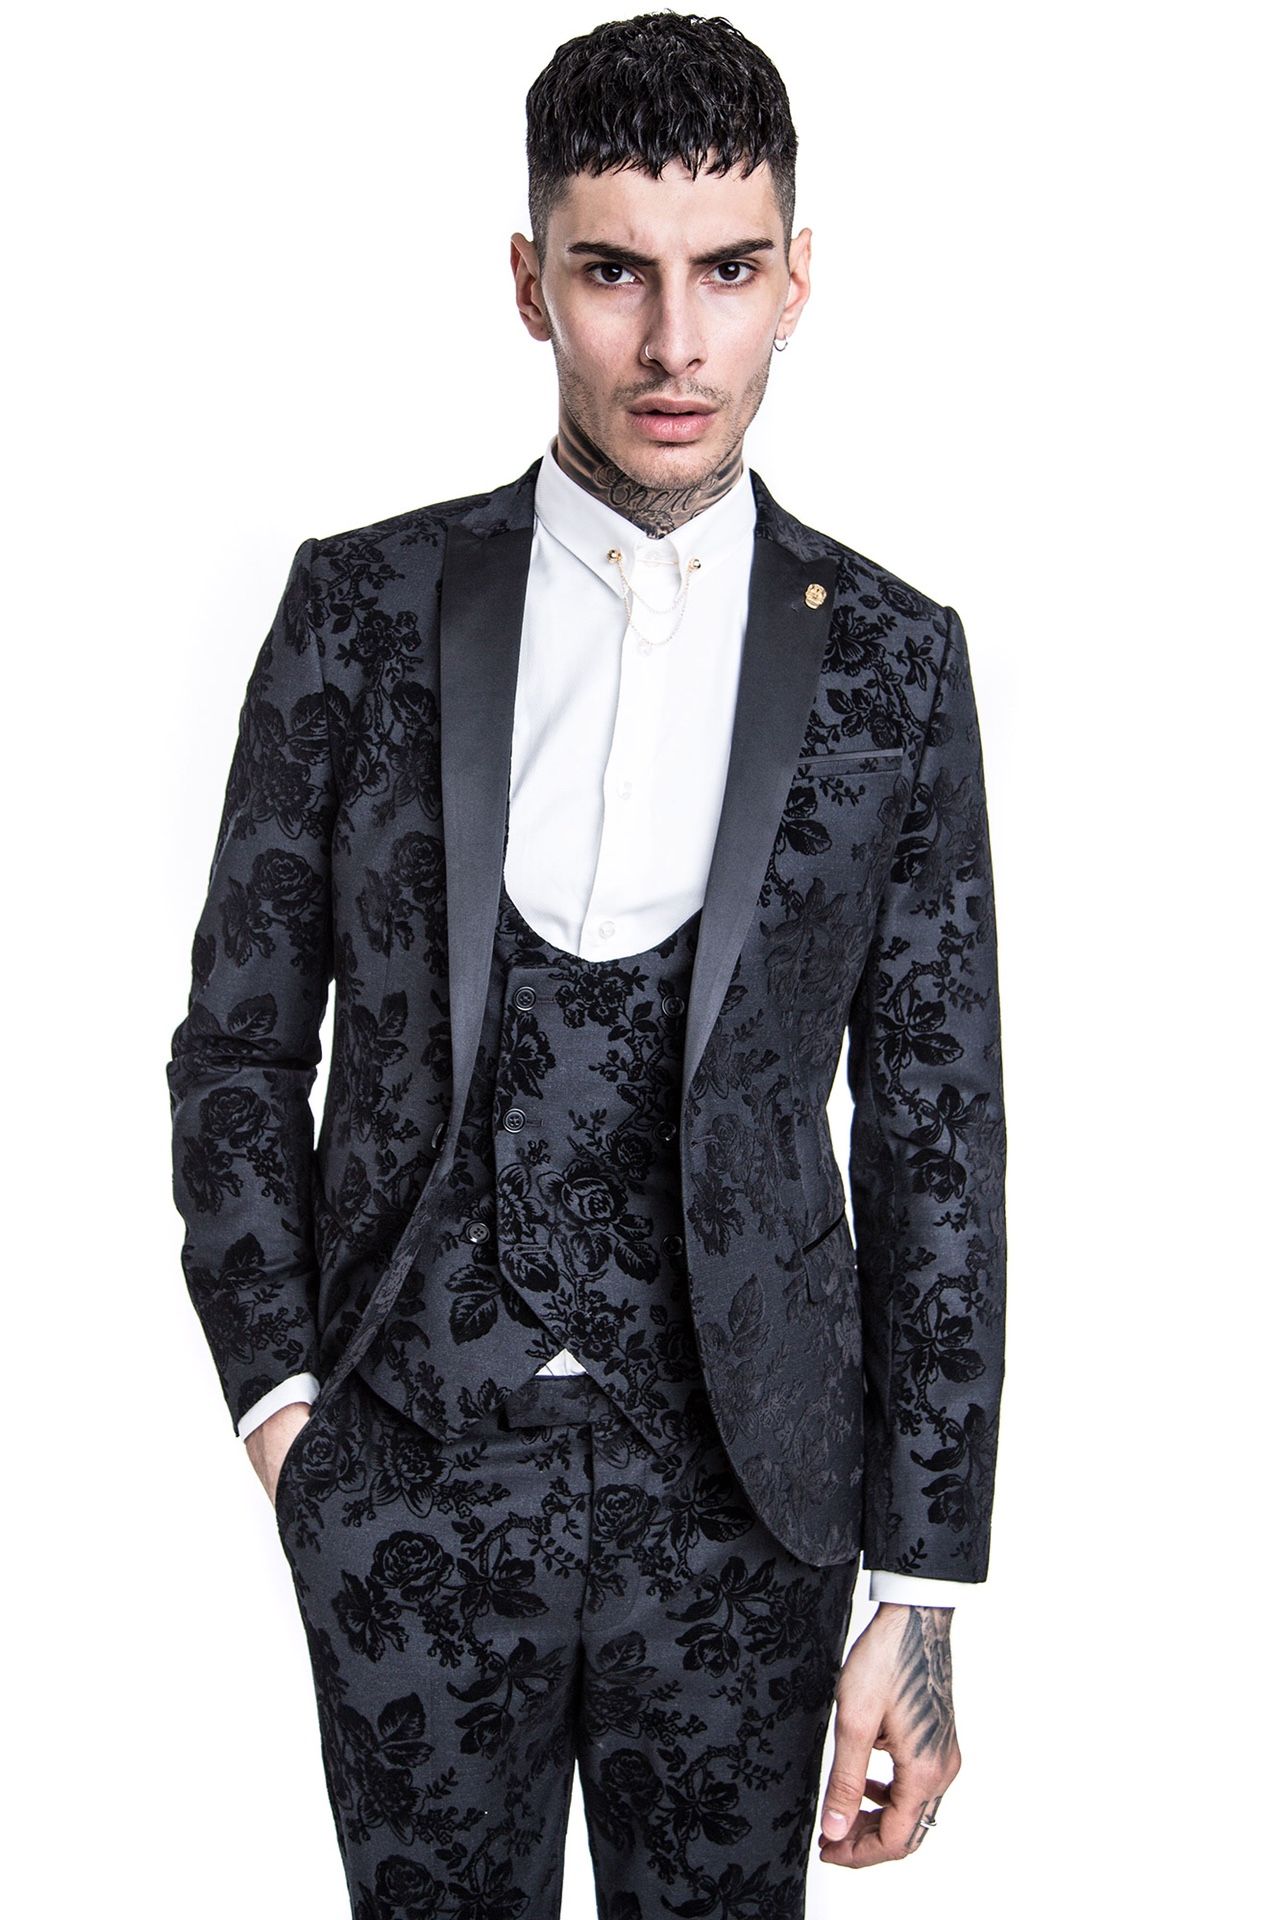 Noise & Monkey ASOS Black Velvet Prom Suit Formal Tuxedo Blazer